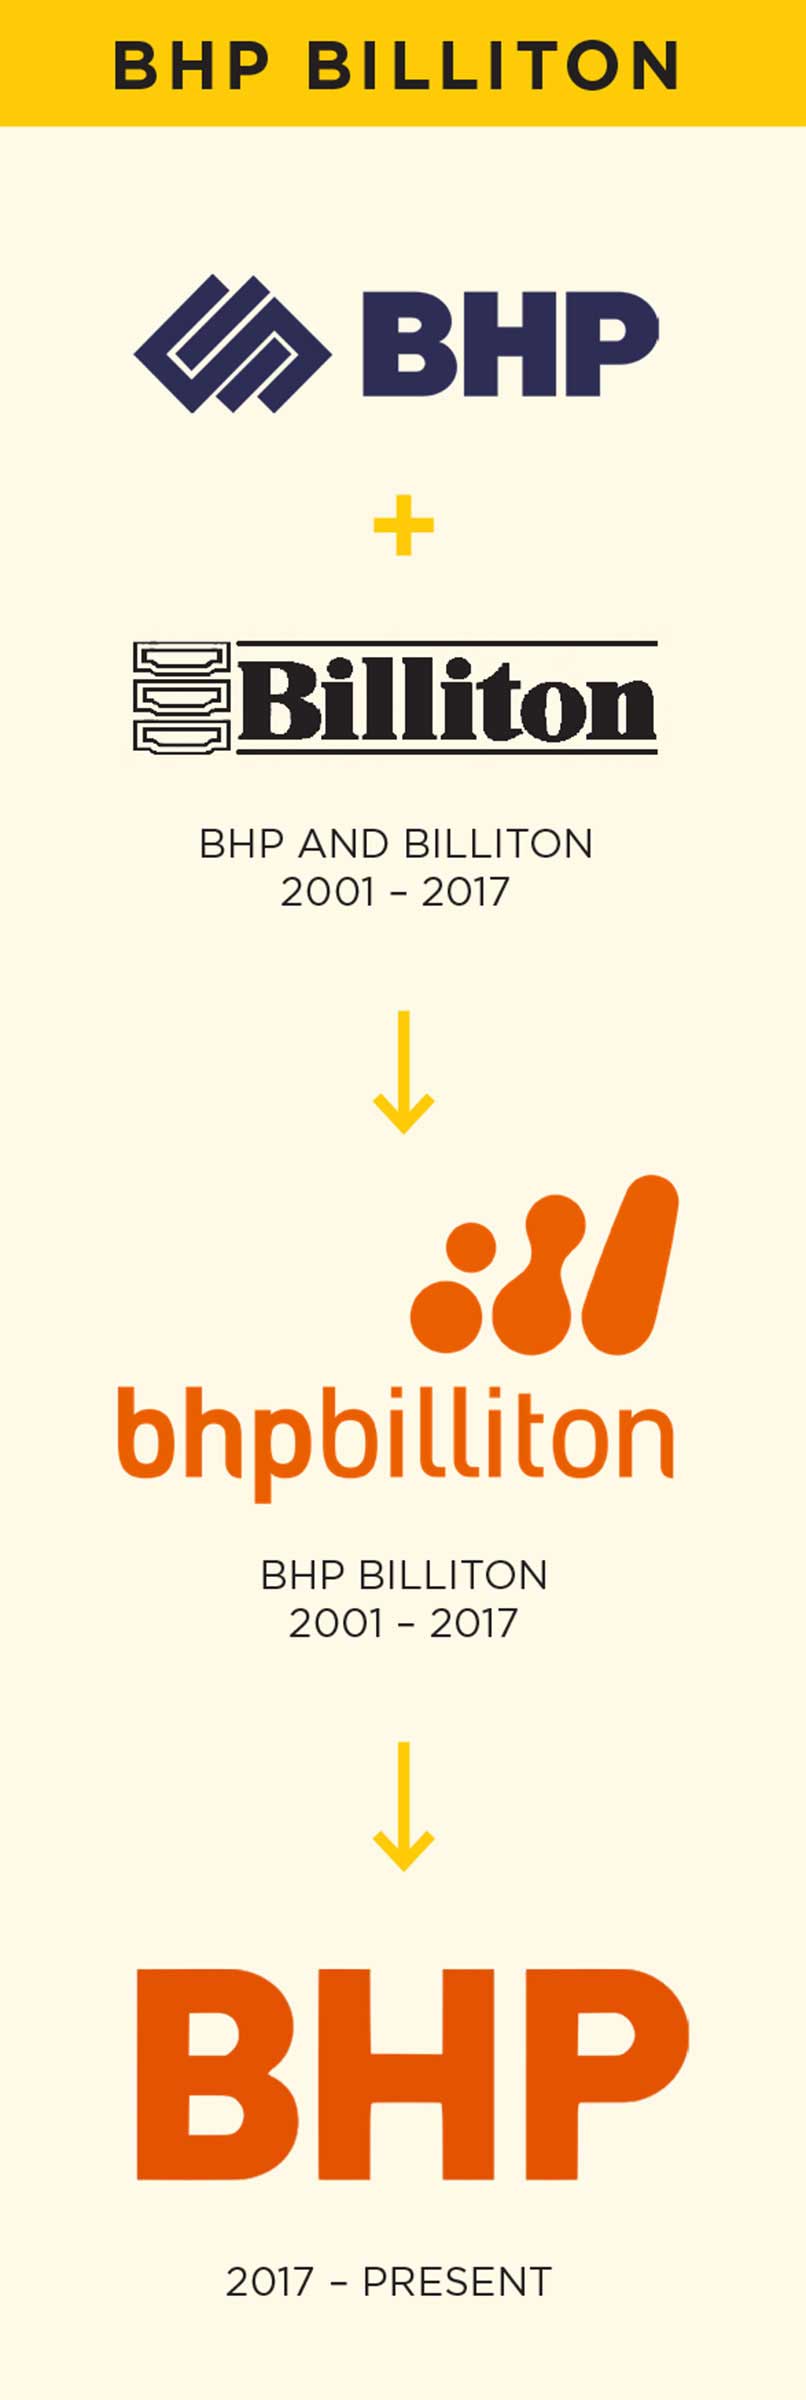 BHP logo history